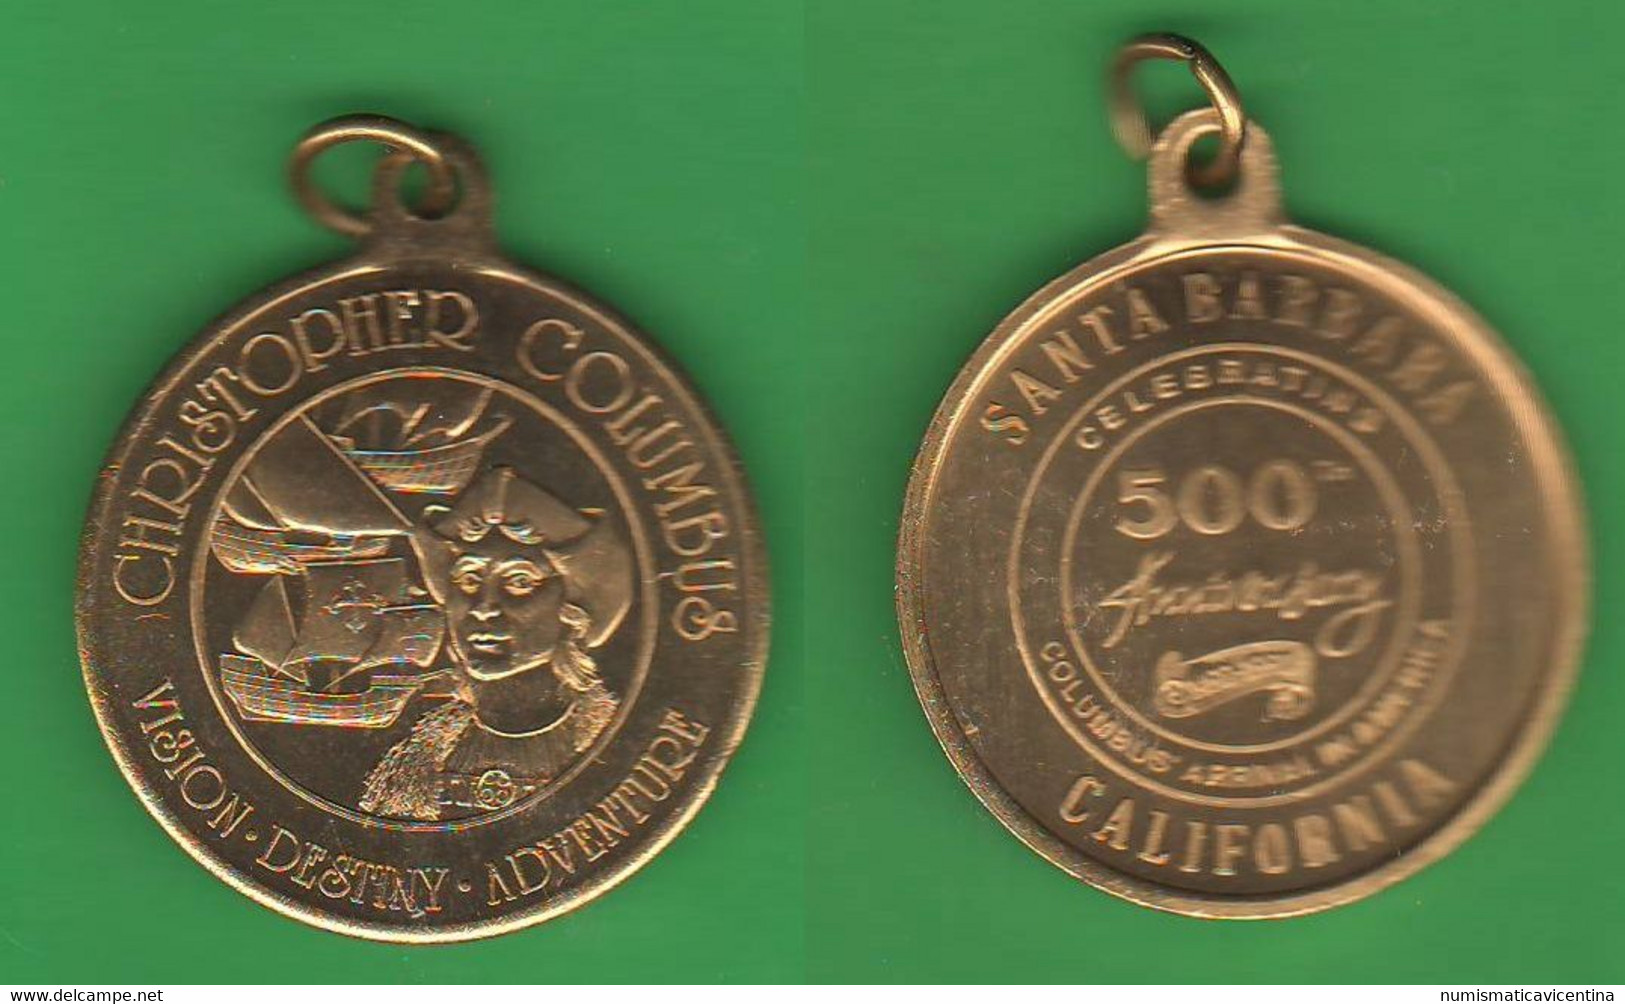 Cristoforo Colombo Columbus Medaglia 500th Ann. Discovery America Santa Barbara California - Professionals/Firms